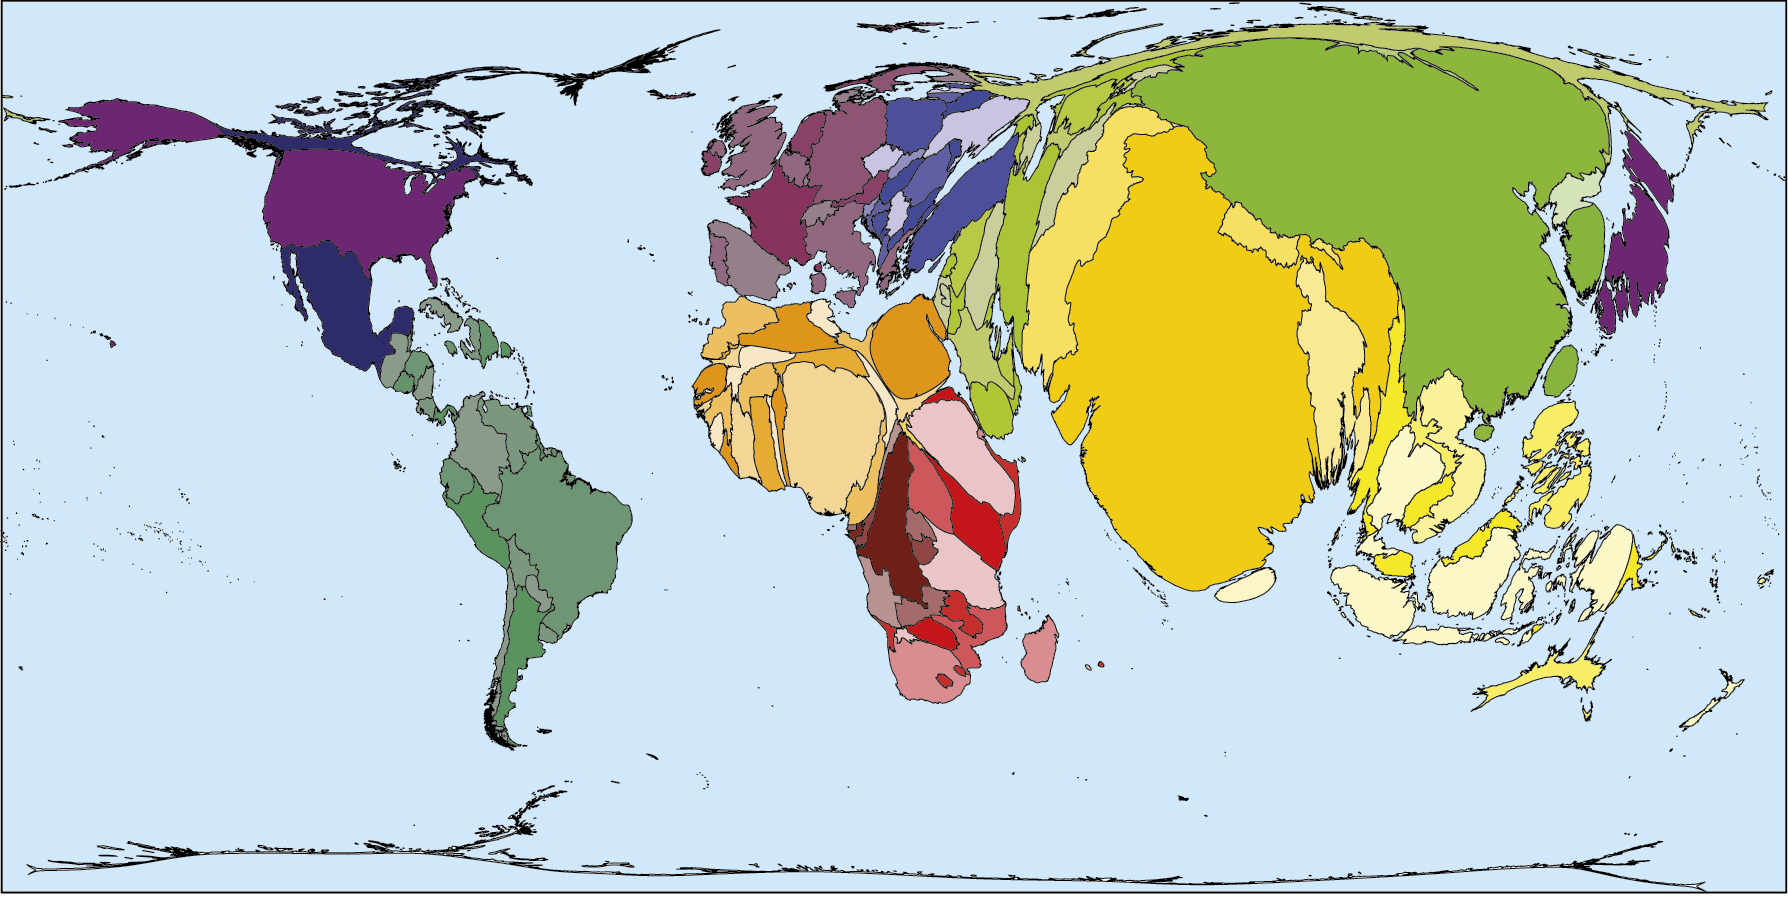 Mapa. Planisfério em anamorfose: população 2018. 
Anamorfose dos continentes com a representação dos países em cores variadas. Na anamorfose, o continente americano está menor em relação à sua representação nos planisférios. Nesse sentido, merece destaque o Canadá, com uma dimensão muito menor na  anamorfose. Alguns países da África estão com dimensões maiores.  Na Ásia, Índia e China estão com área muito maior do que a que possuem nos planisférios, assim como o Japão, e a Rússia, ao contrário, está com área muito reduzida, aparecendo pequena e fina. Oceania e Antártida também estão com área bastante reduzida. Na anamorfose, não há indicação de paralelos e meridianos, escala e rosa dos ventos.